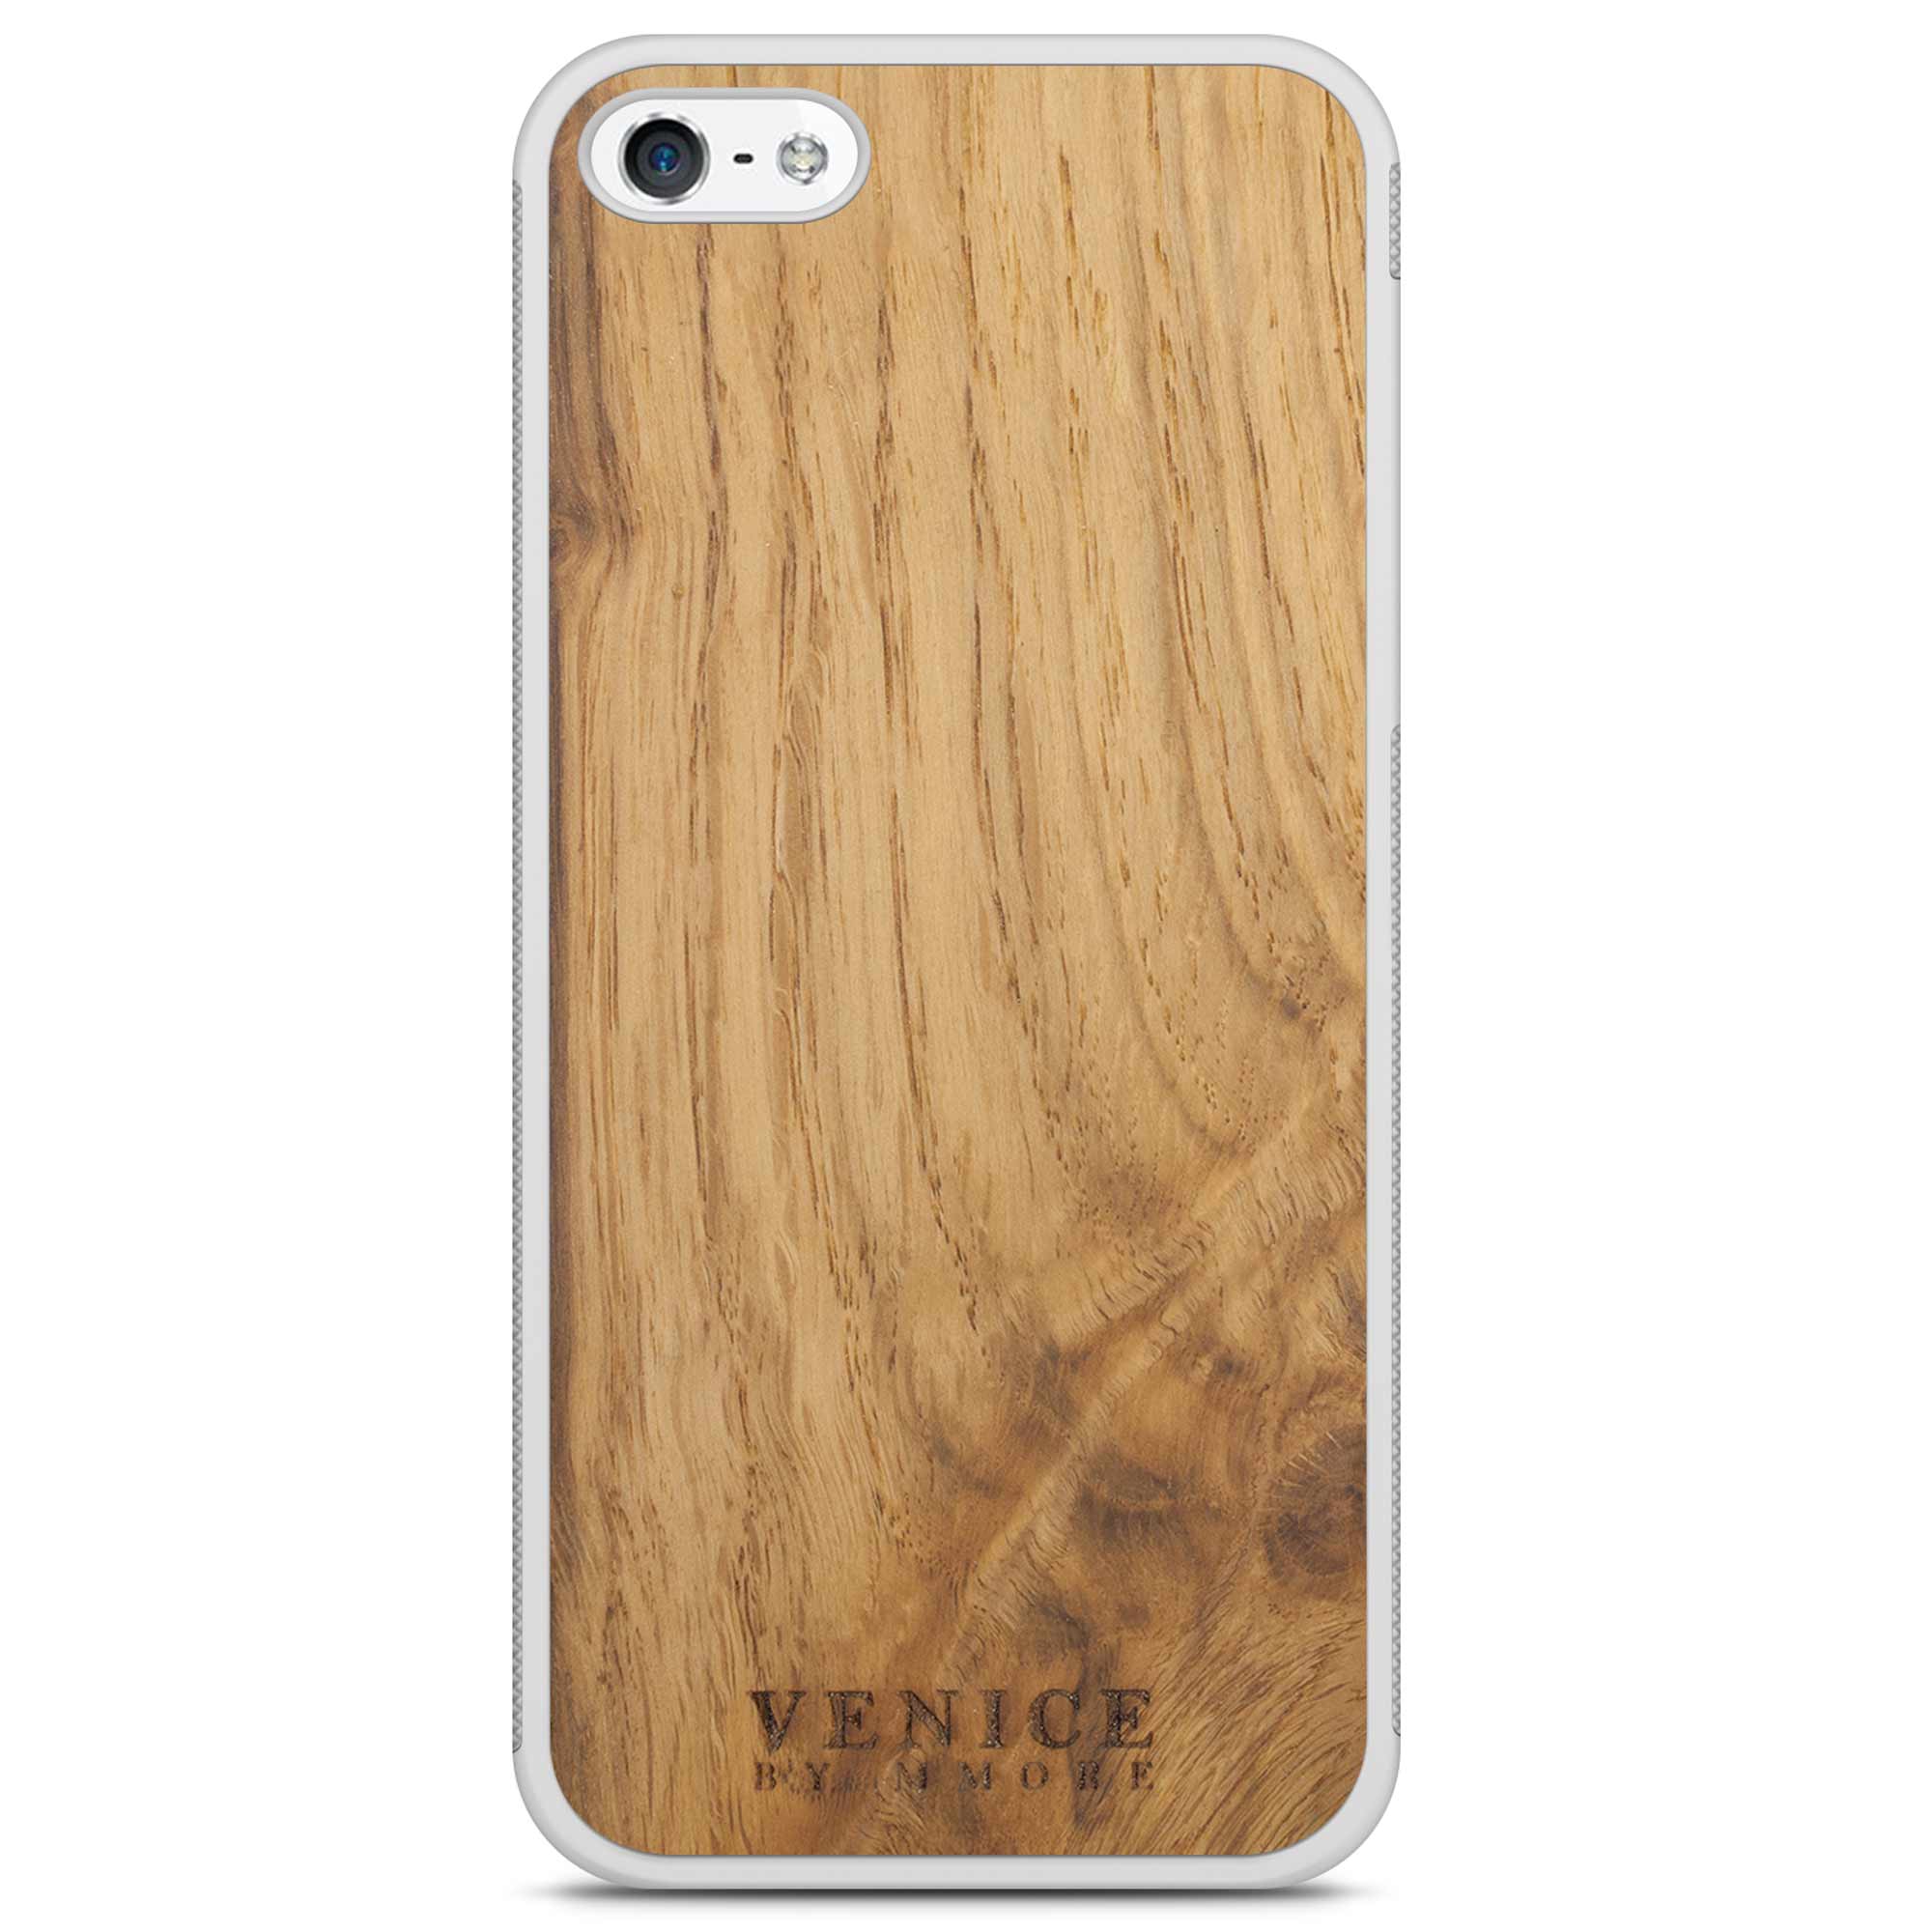 Белый чехол для телефона из дерева с надписью Venice для iPhone 5